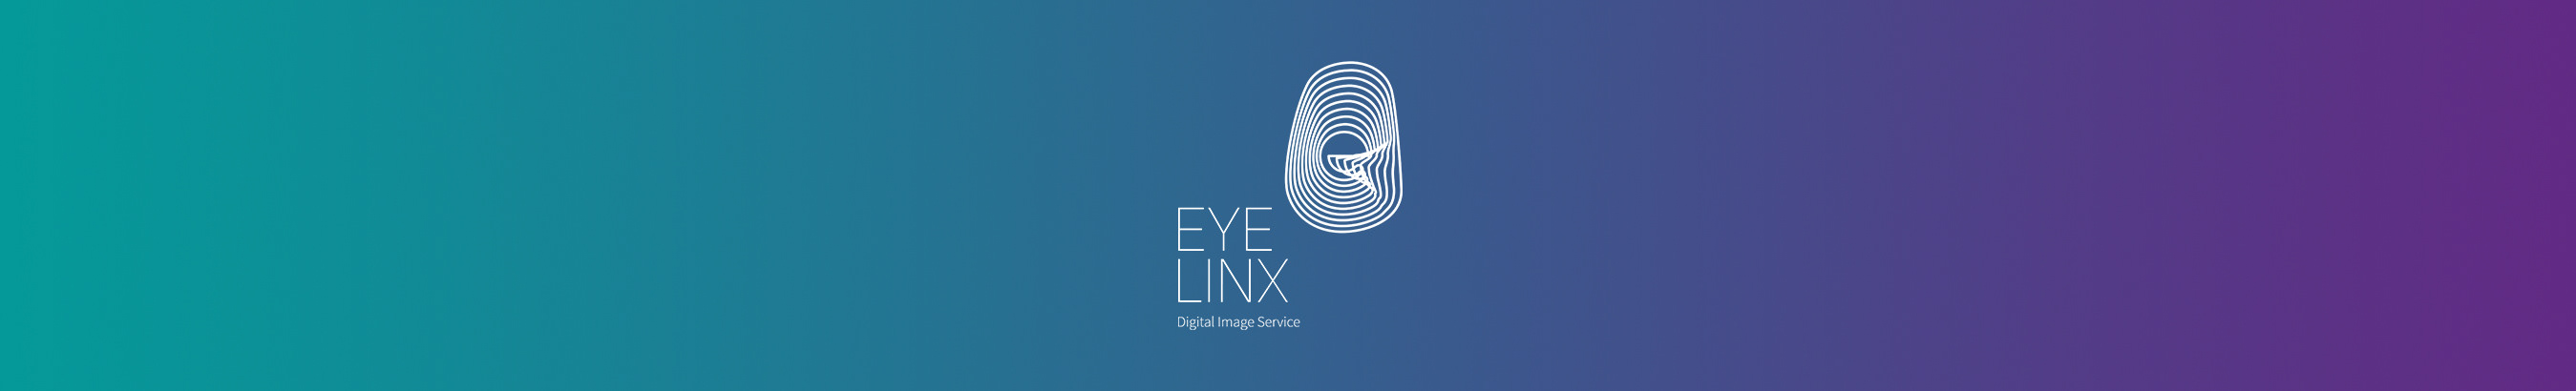 Eyelinx Indonesia's profile banner